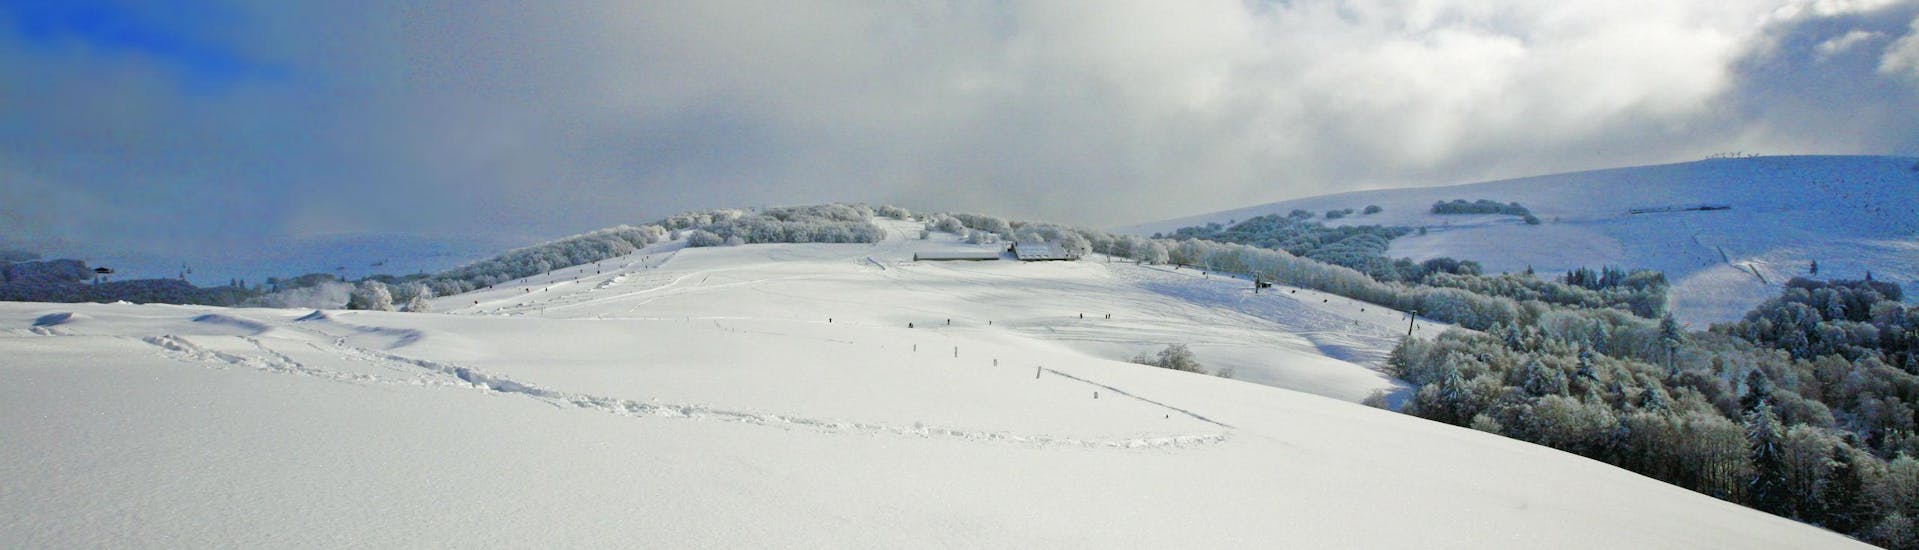 Une image des collines maintenant couverte de neige du département des Vosges, où l'école de ski locale offre une sélection diverse de cours de ski.